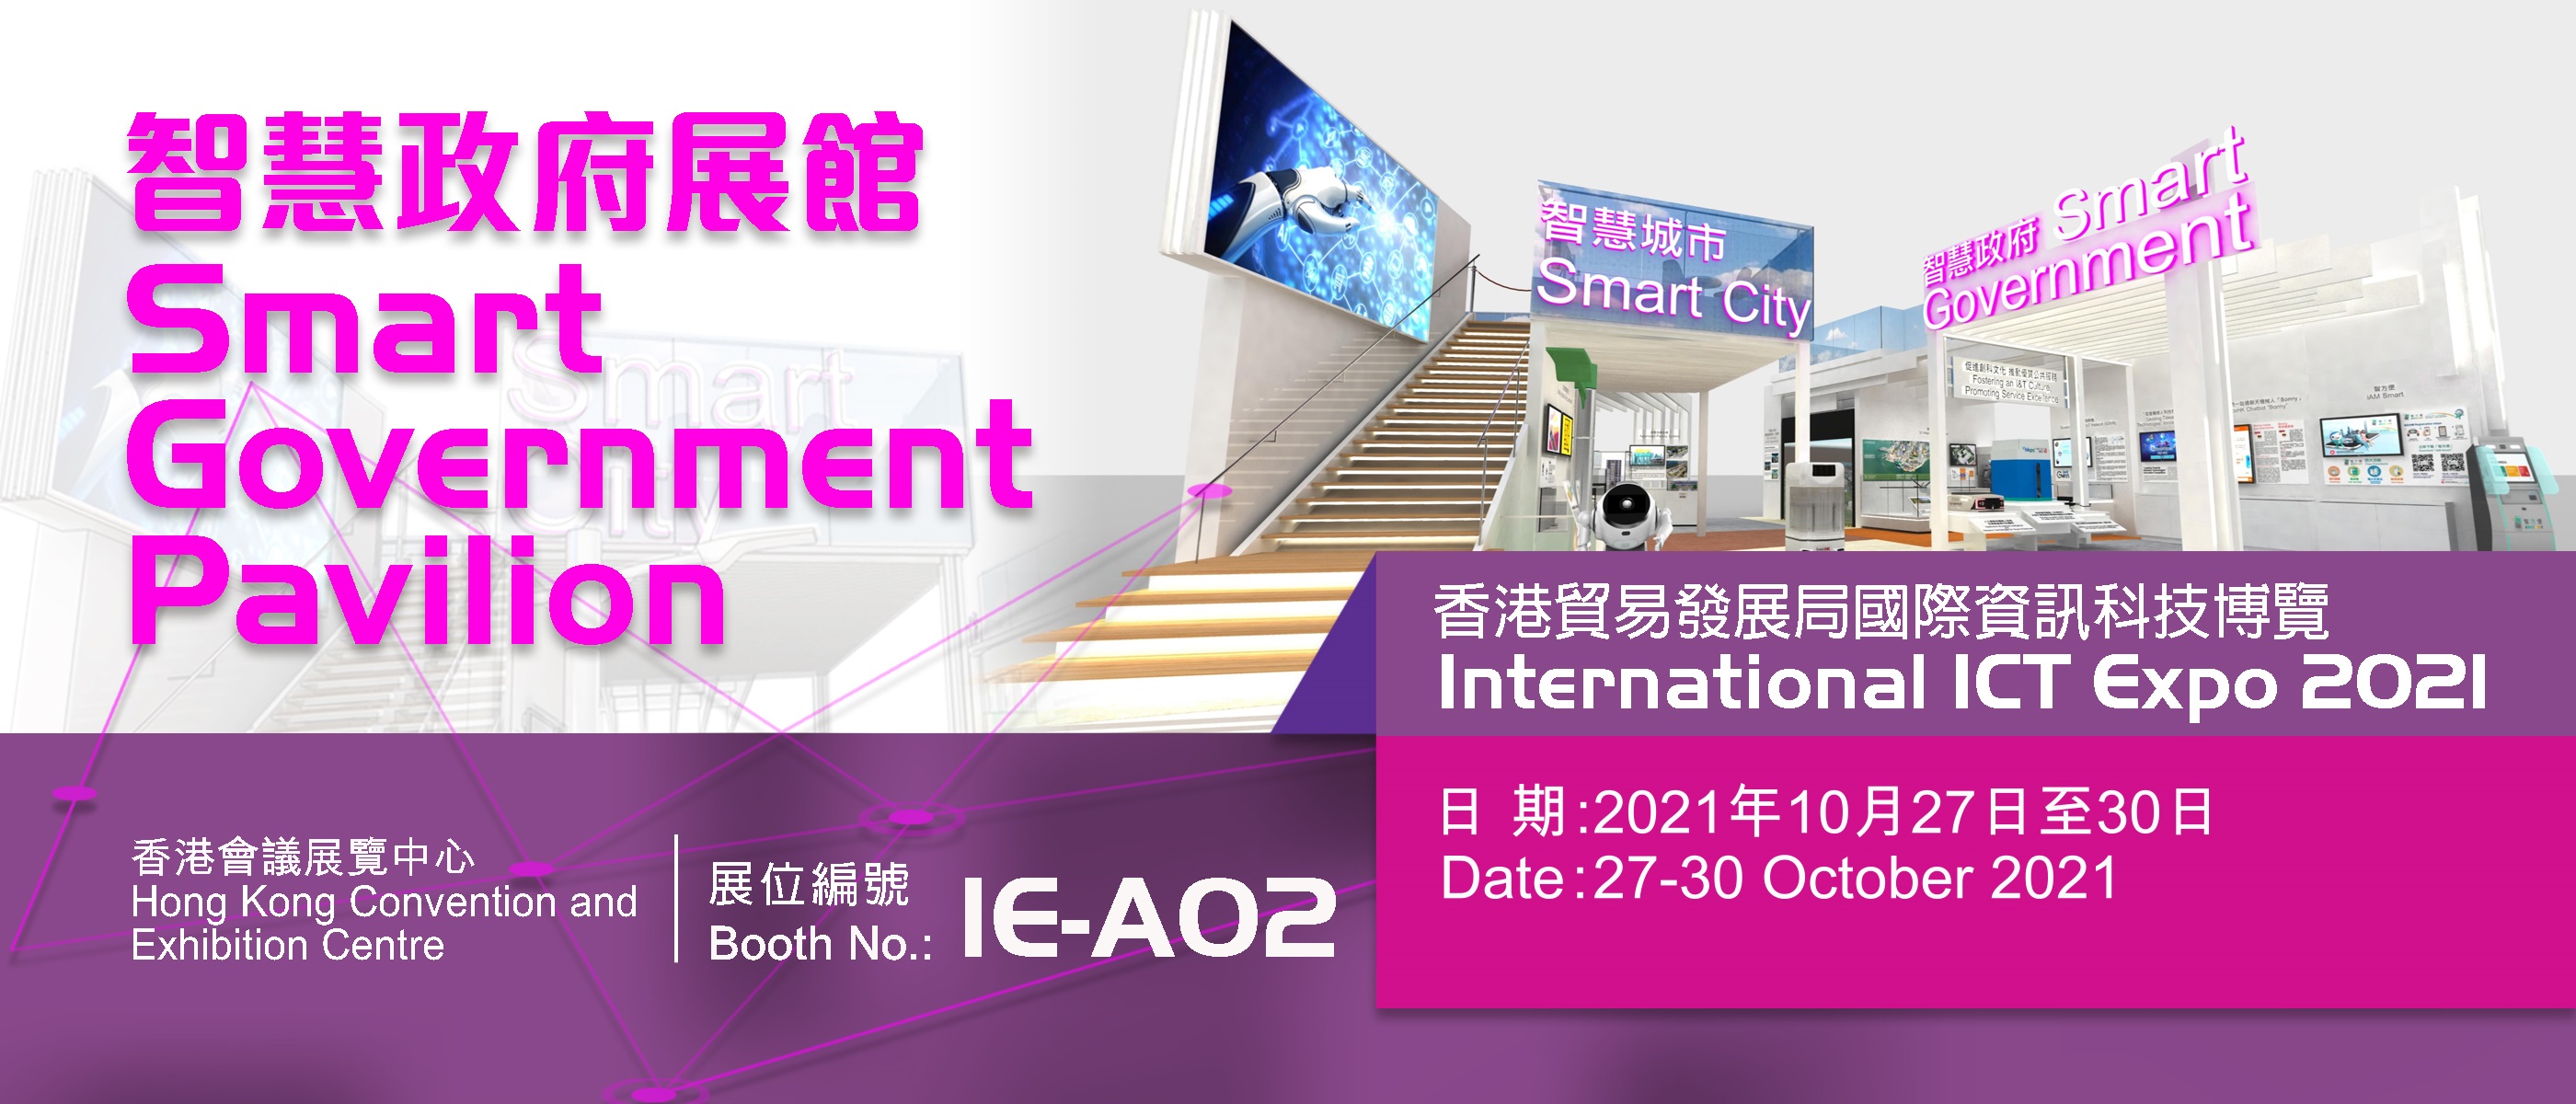 國際資訊科技博覽2021「智慧政府展館」